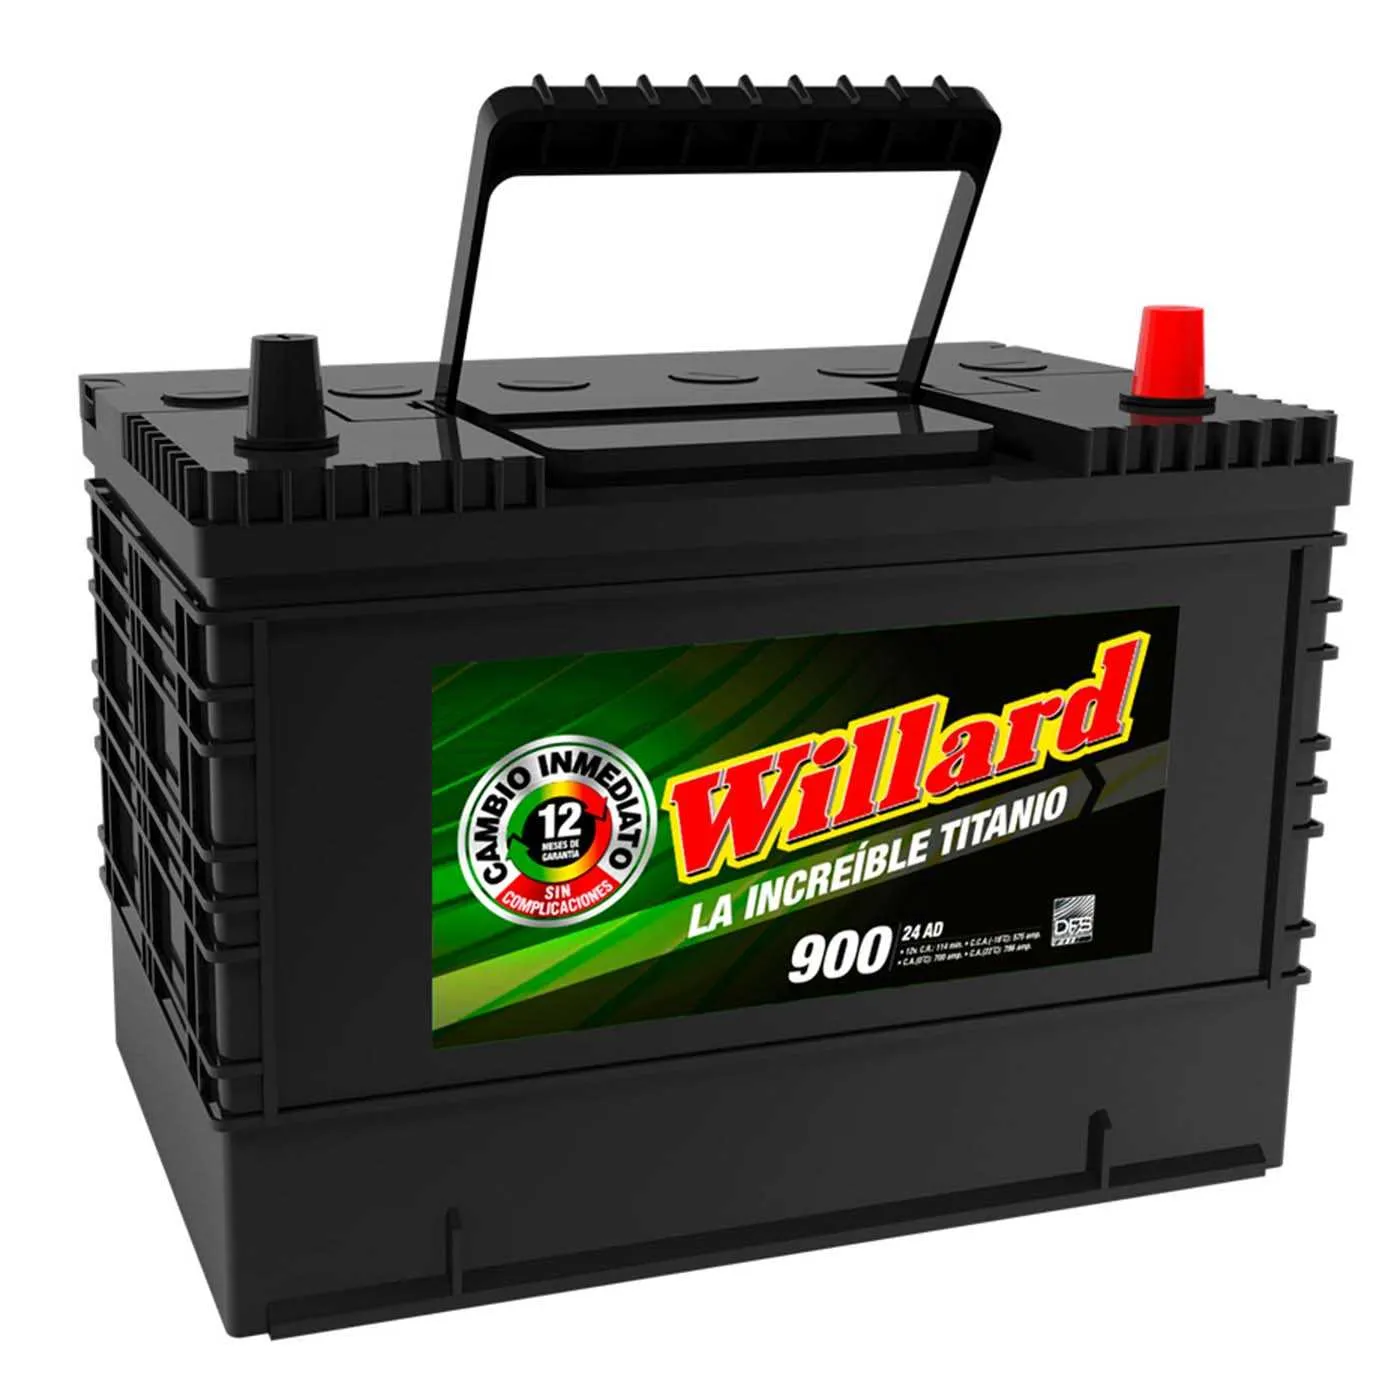 Batería Carro WILLARD 24AD-900